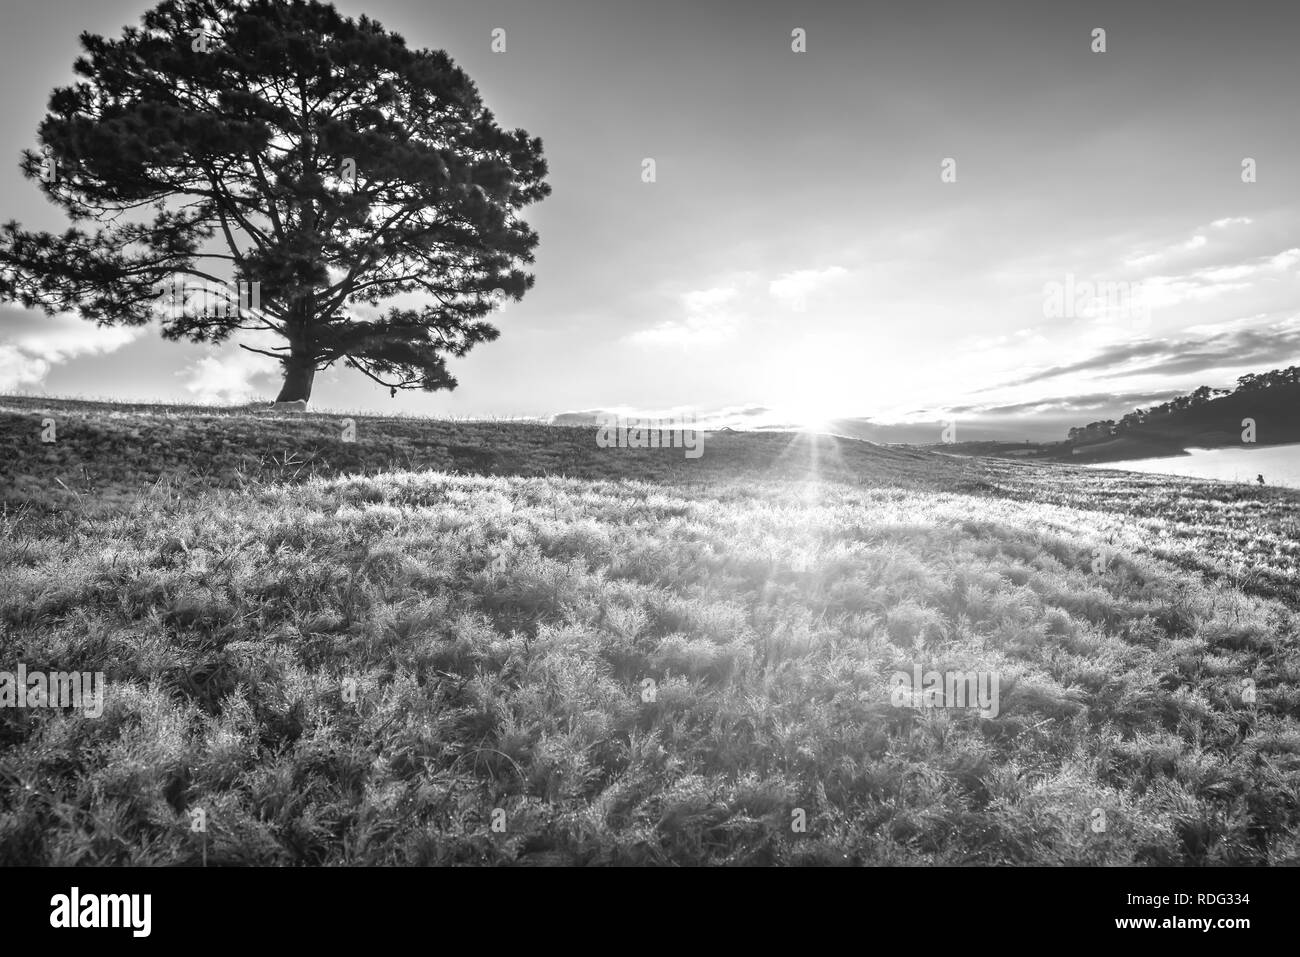 Neve magica collina di erba e pino alba quando il sole non è alto, l'erba è coperto con una nebbia come bianco neve dopo una lunga notte. Foto Stock